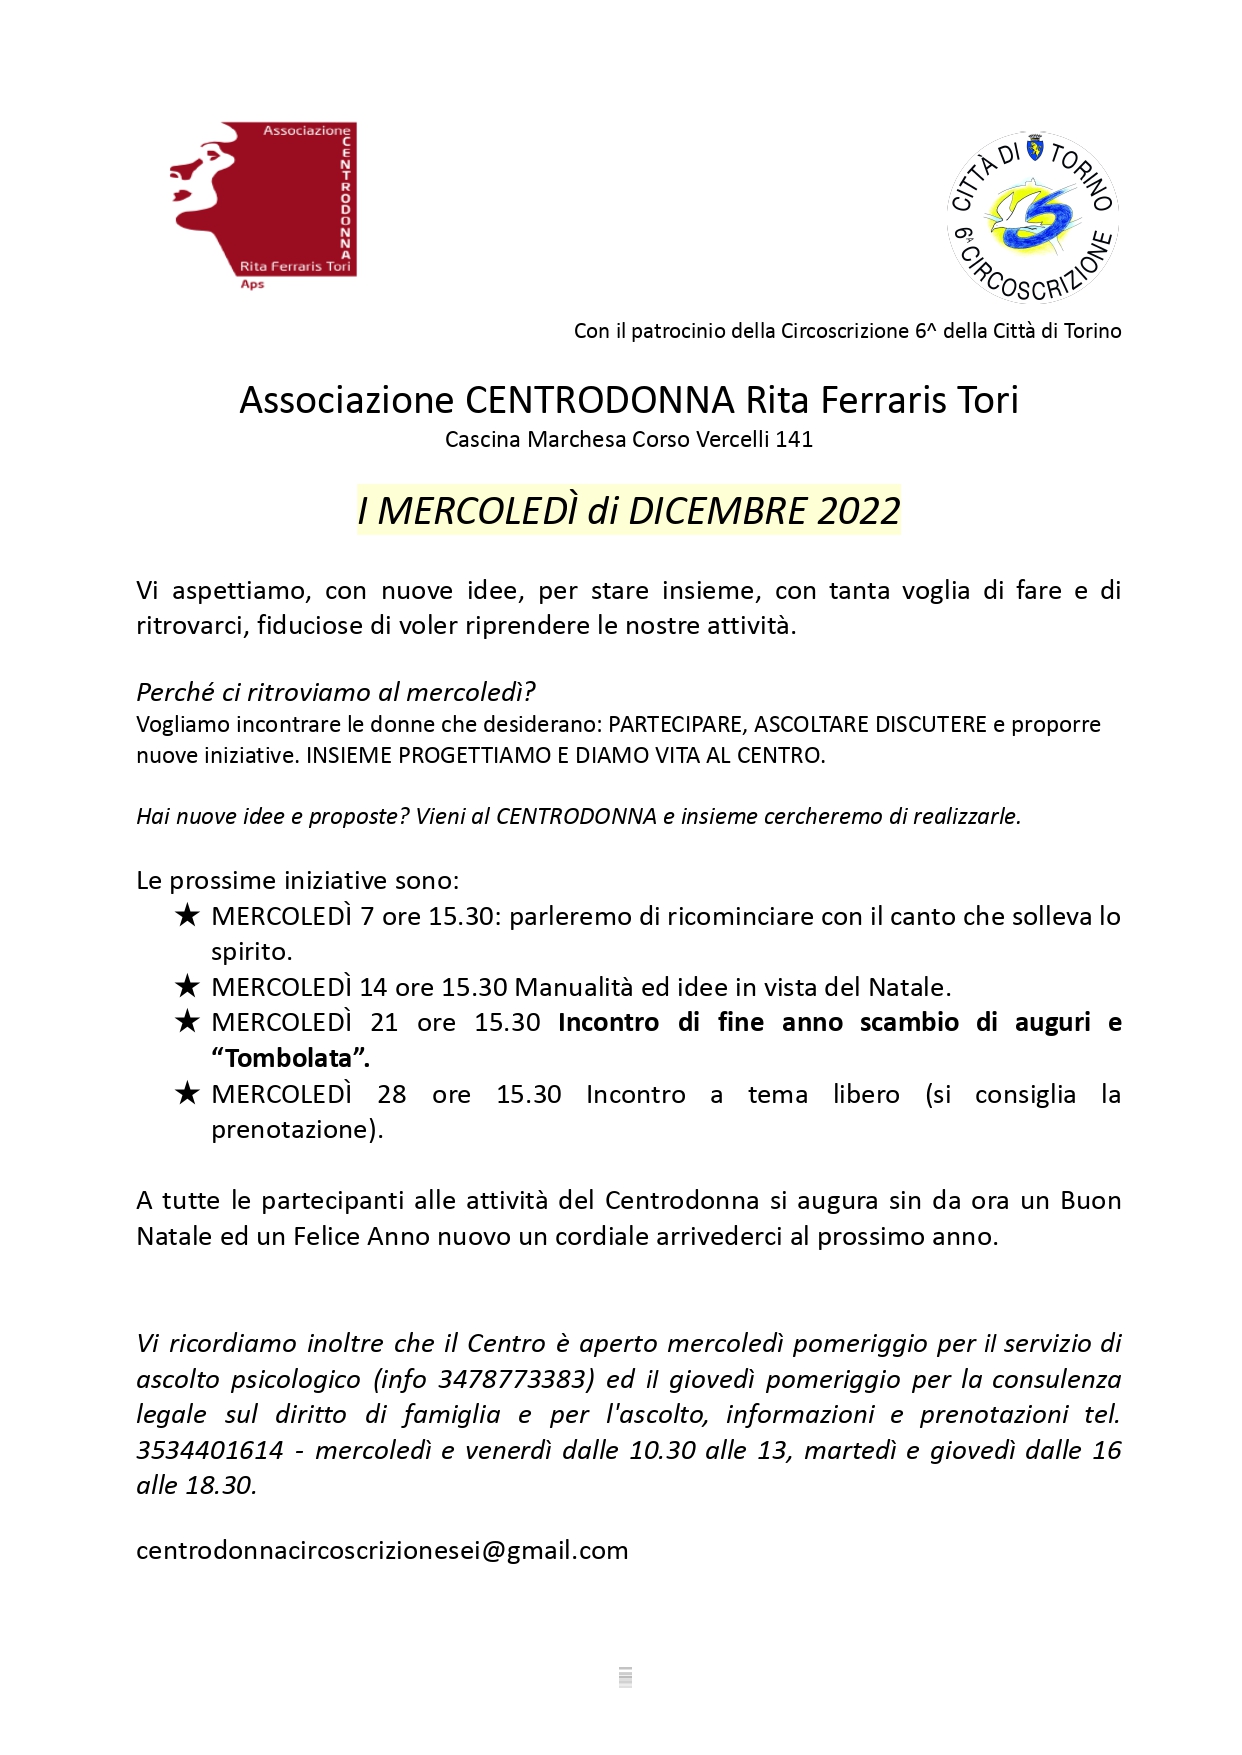 centrodonna cirscoscrizione 6 dicembre 2022